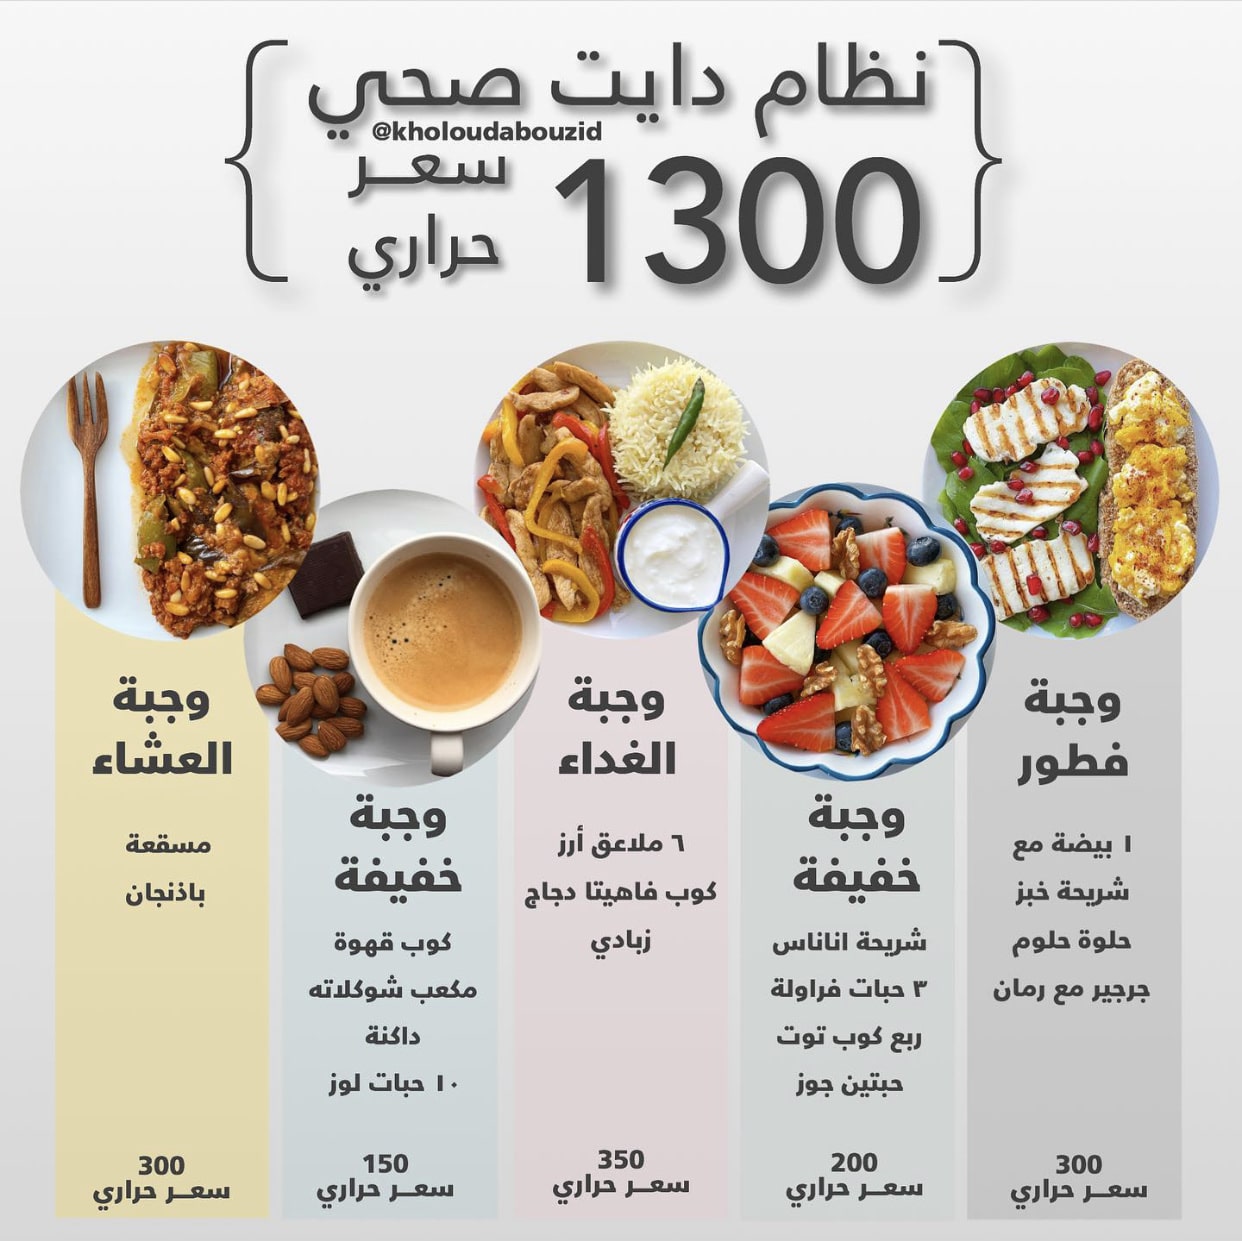 نظام غذائي لخسارة الوزن ١٣٠٠ سعر حراري خلود ابوزيد